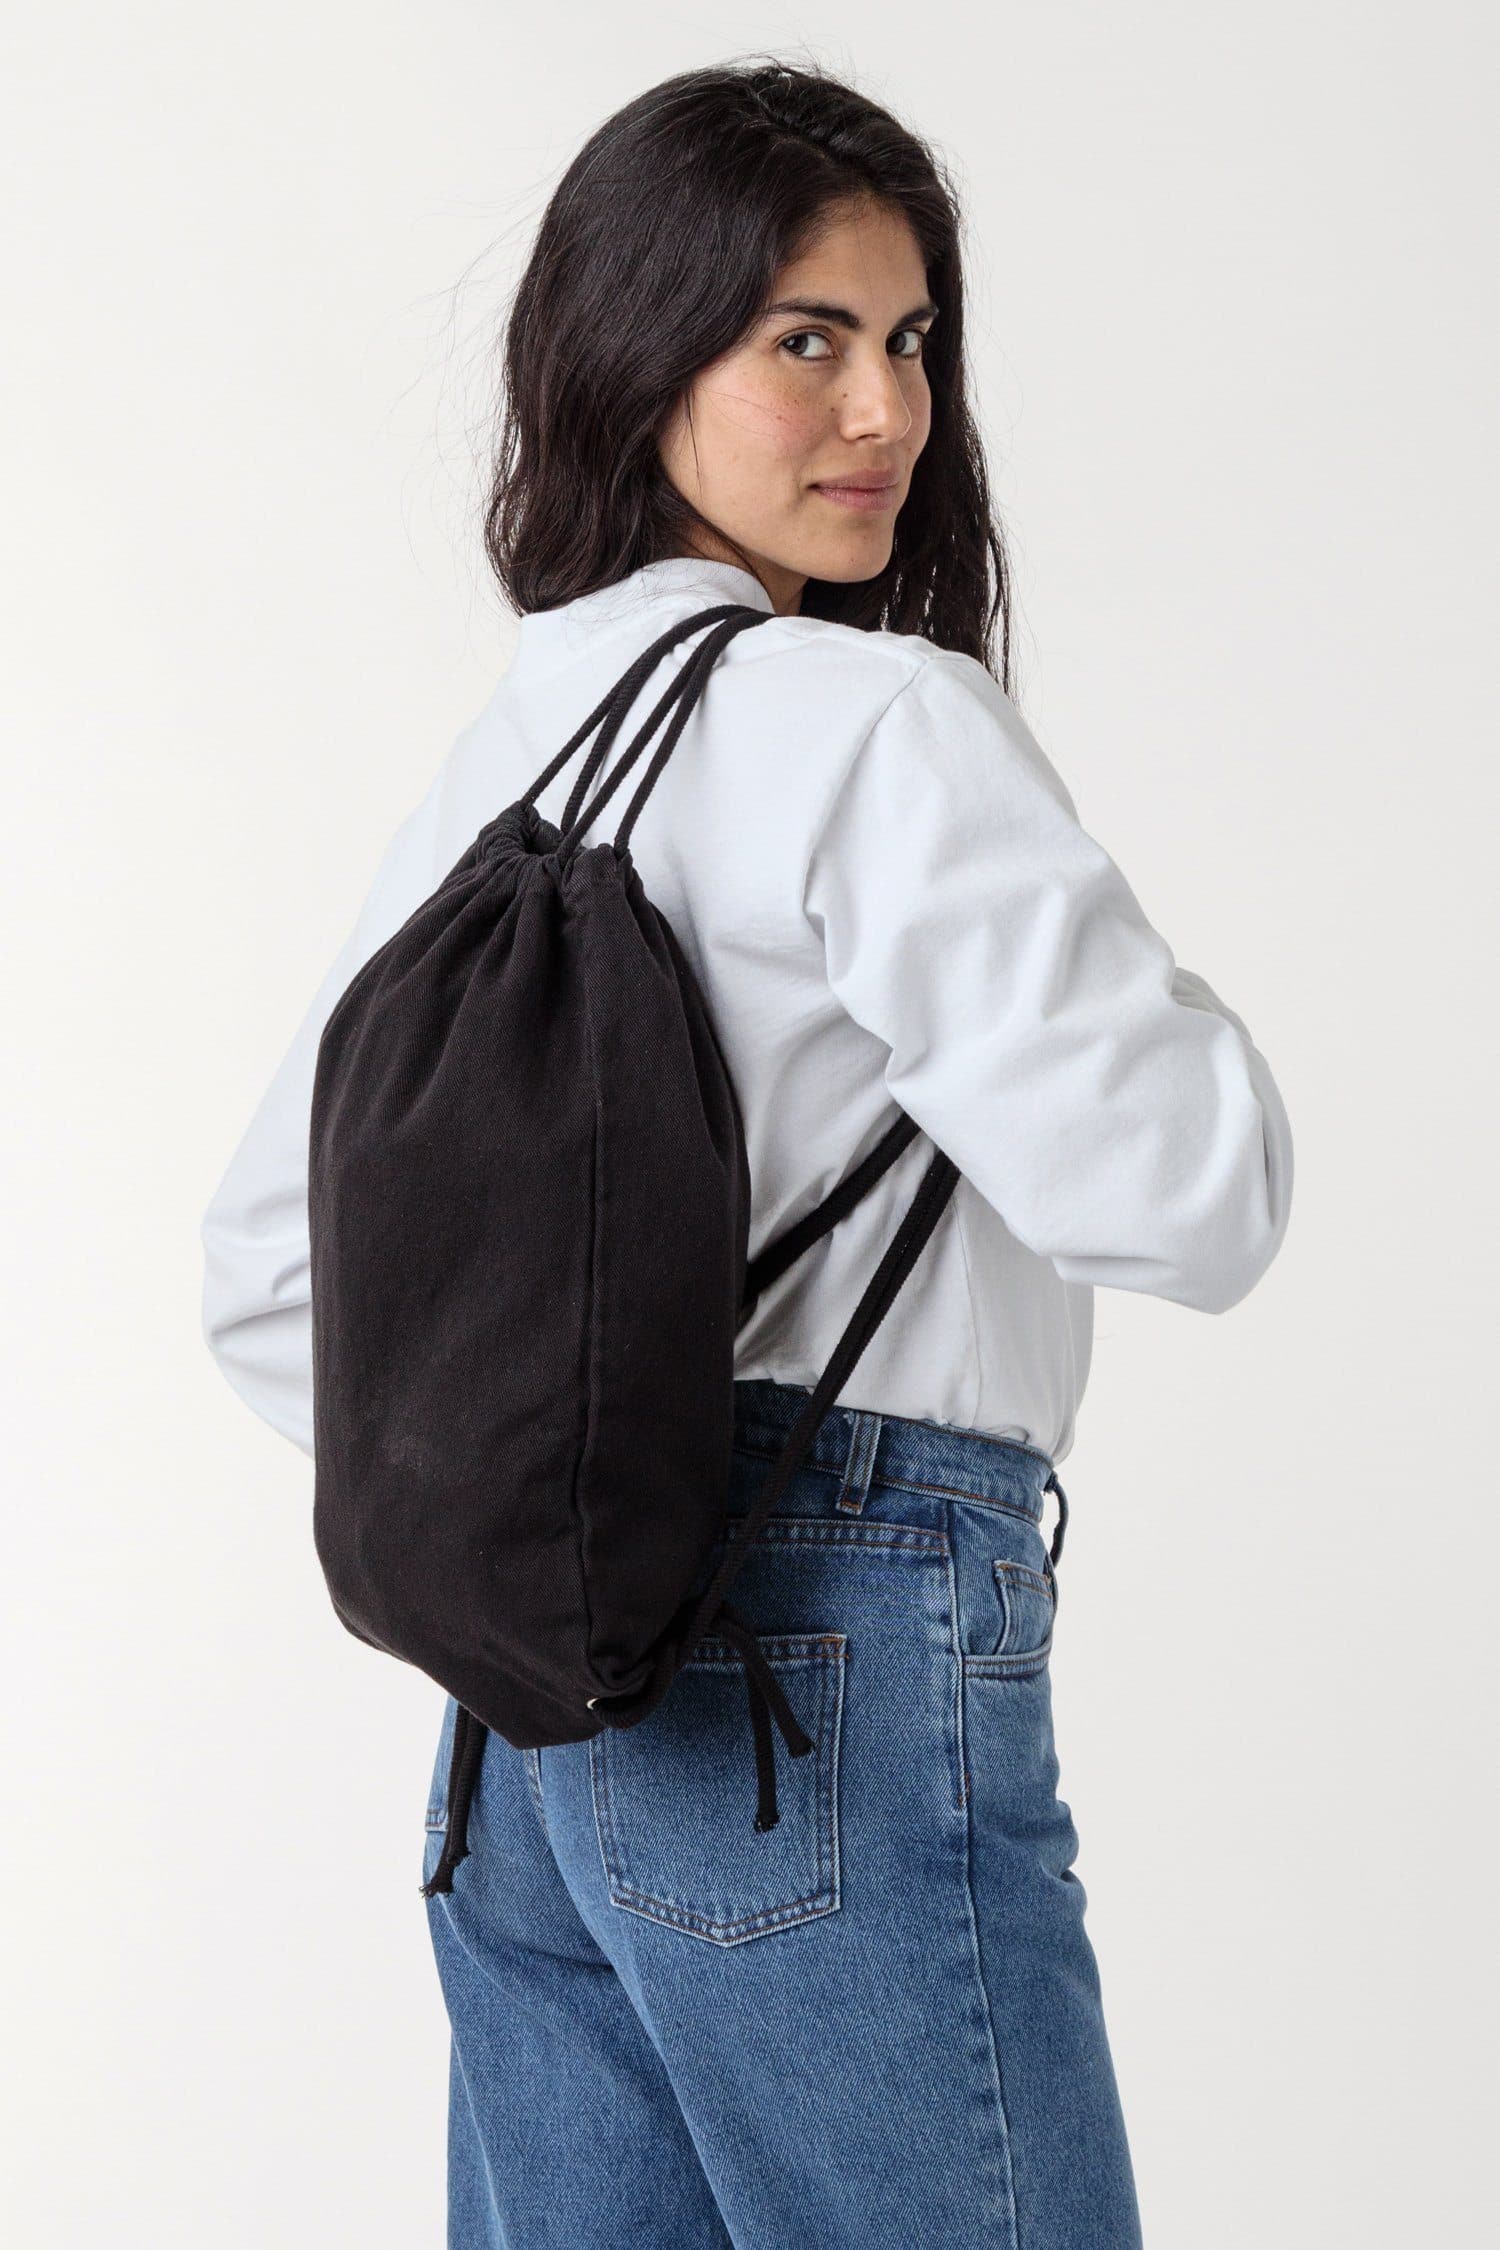 Amiri Classic Denim Logo Backpack - Clay Indigo Black | Editorialist